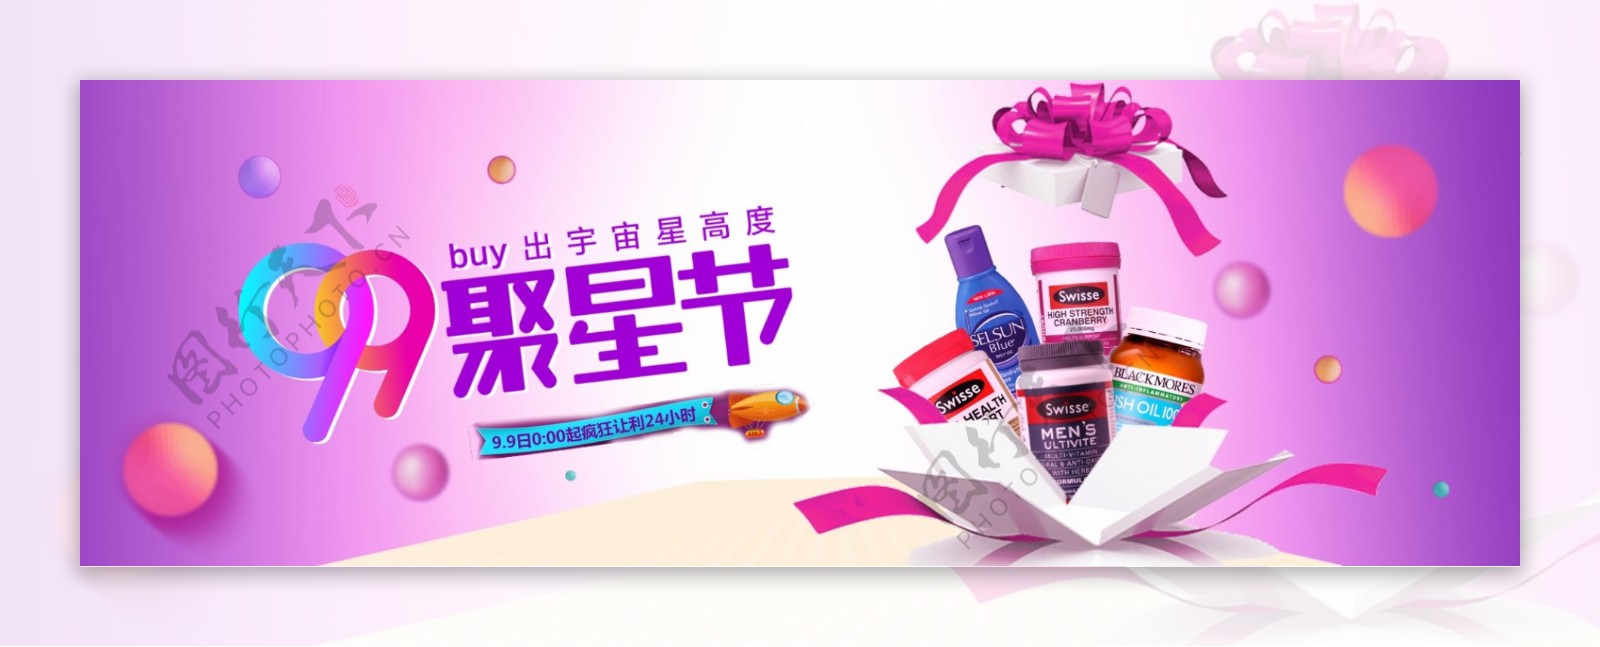 淘宝天猫电商99聚星节促销炫彩背景模板活动海报banner设计模板